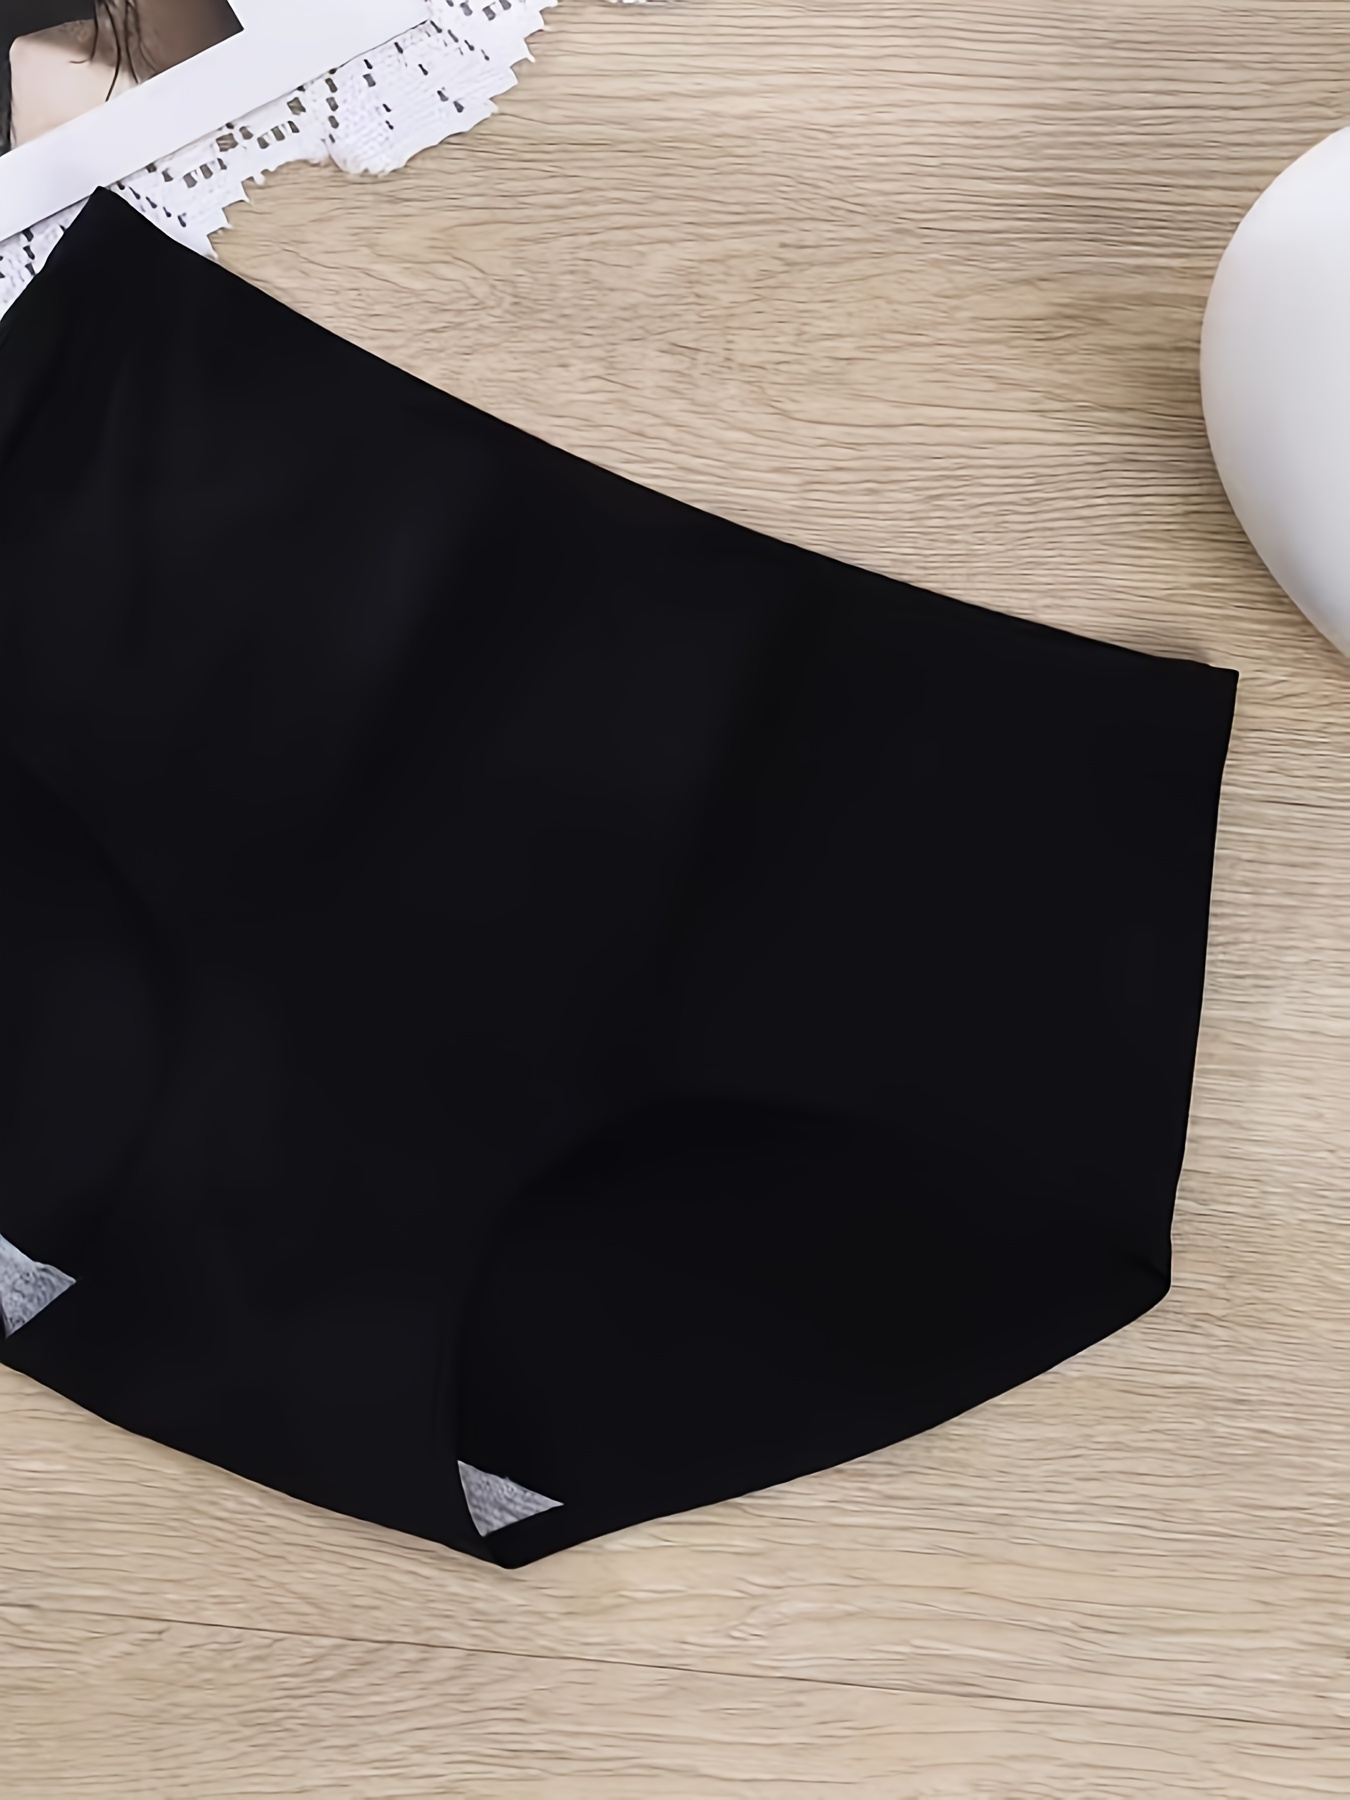 Women's Ice Silk Panties Ladies Solid Seamless Underwear Female